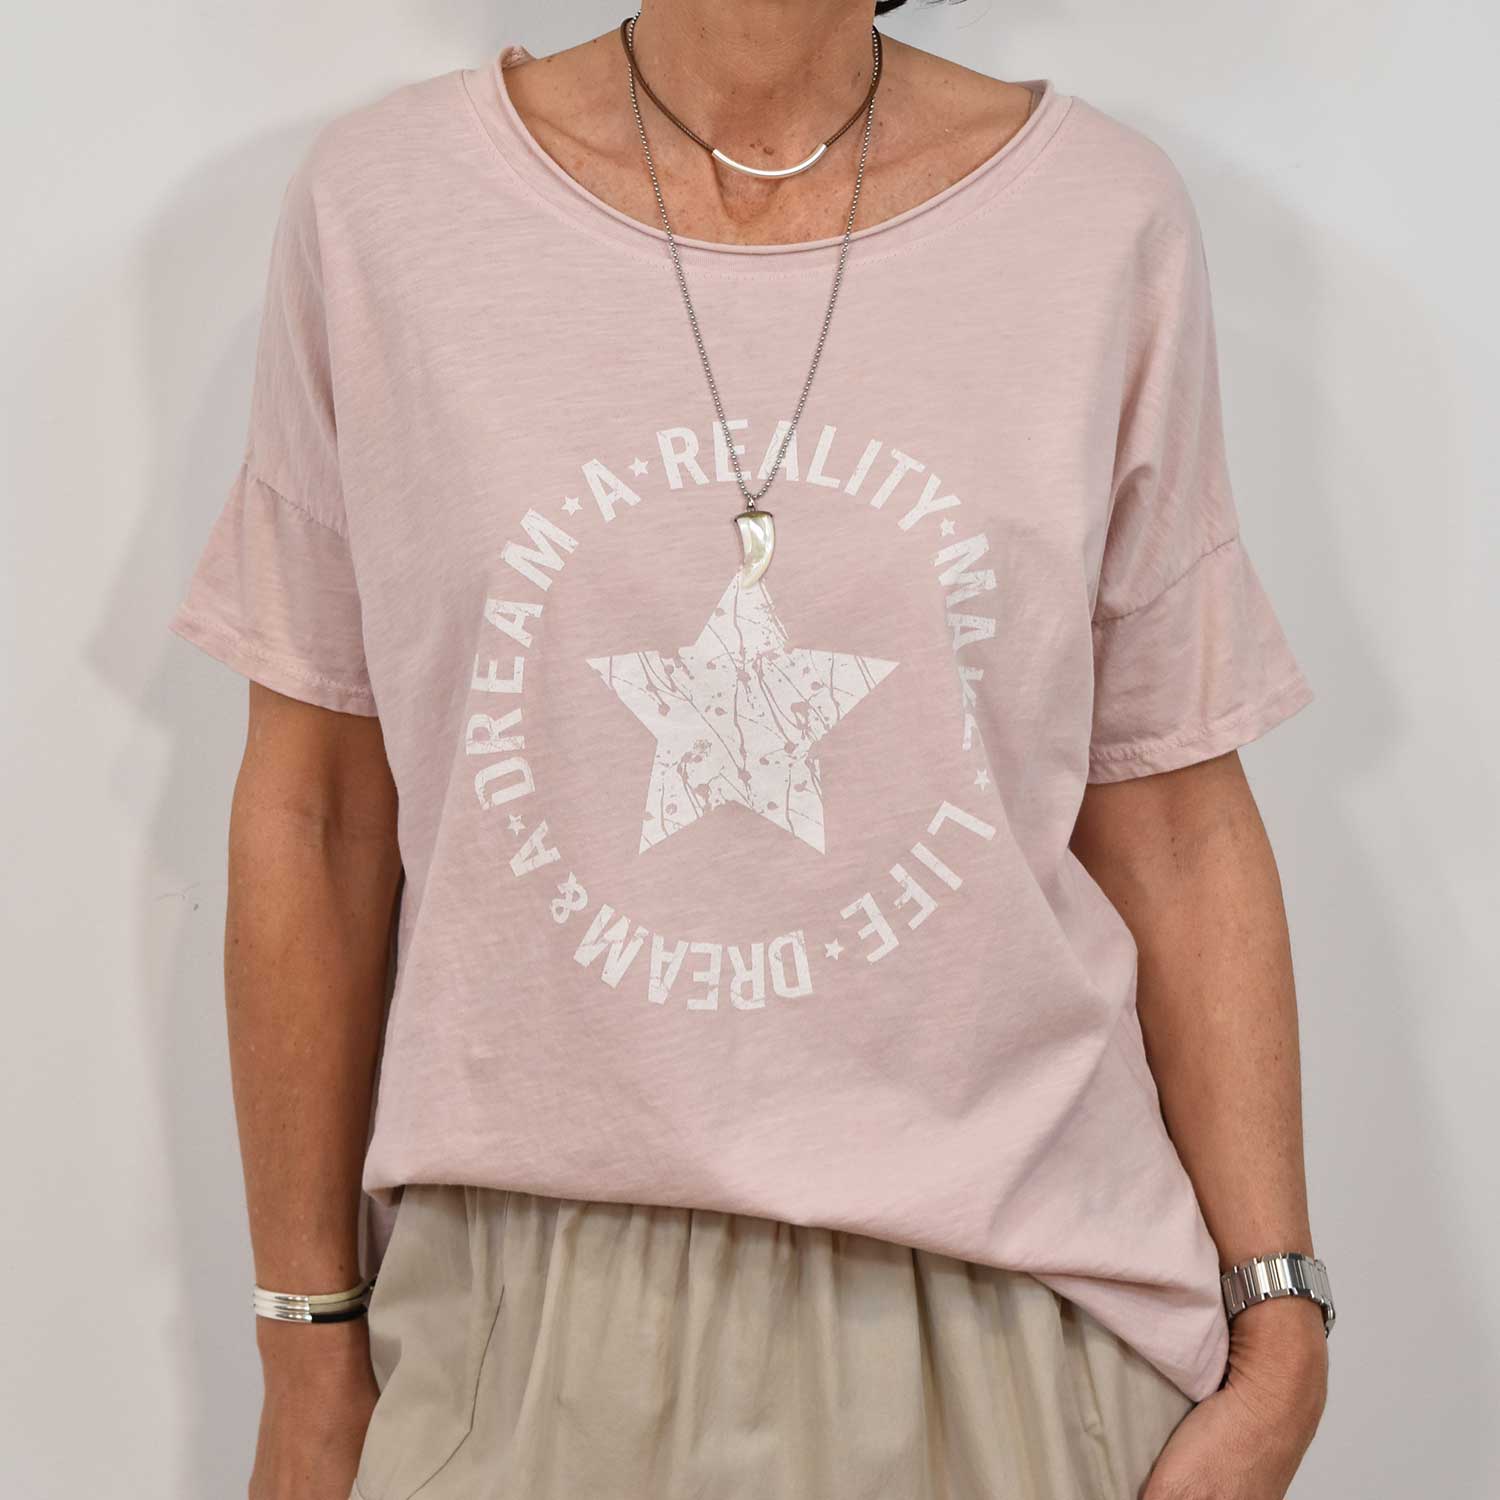 Camiseta estrella 'Dream' rosa